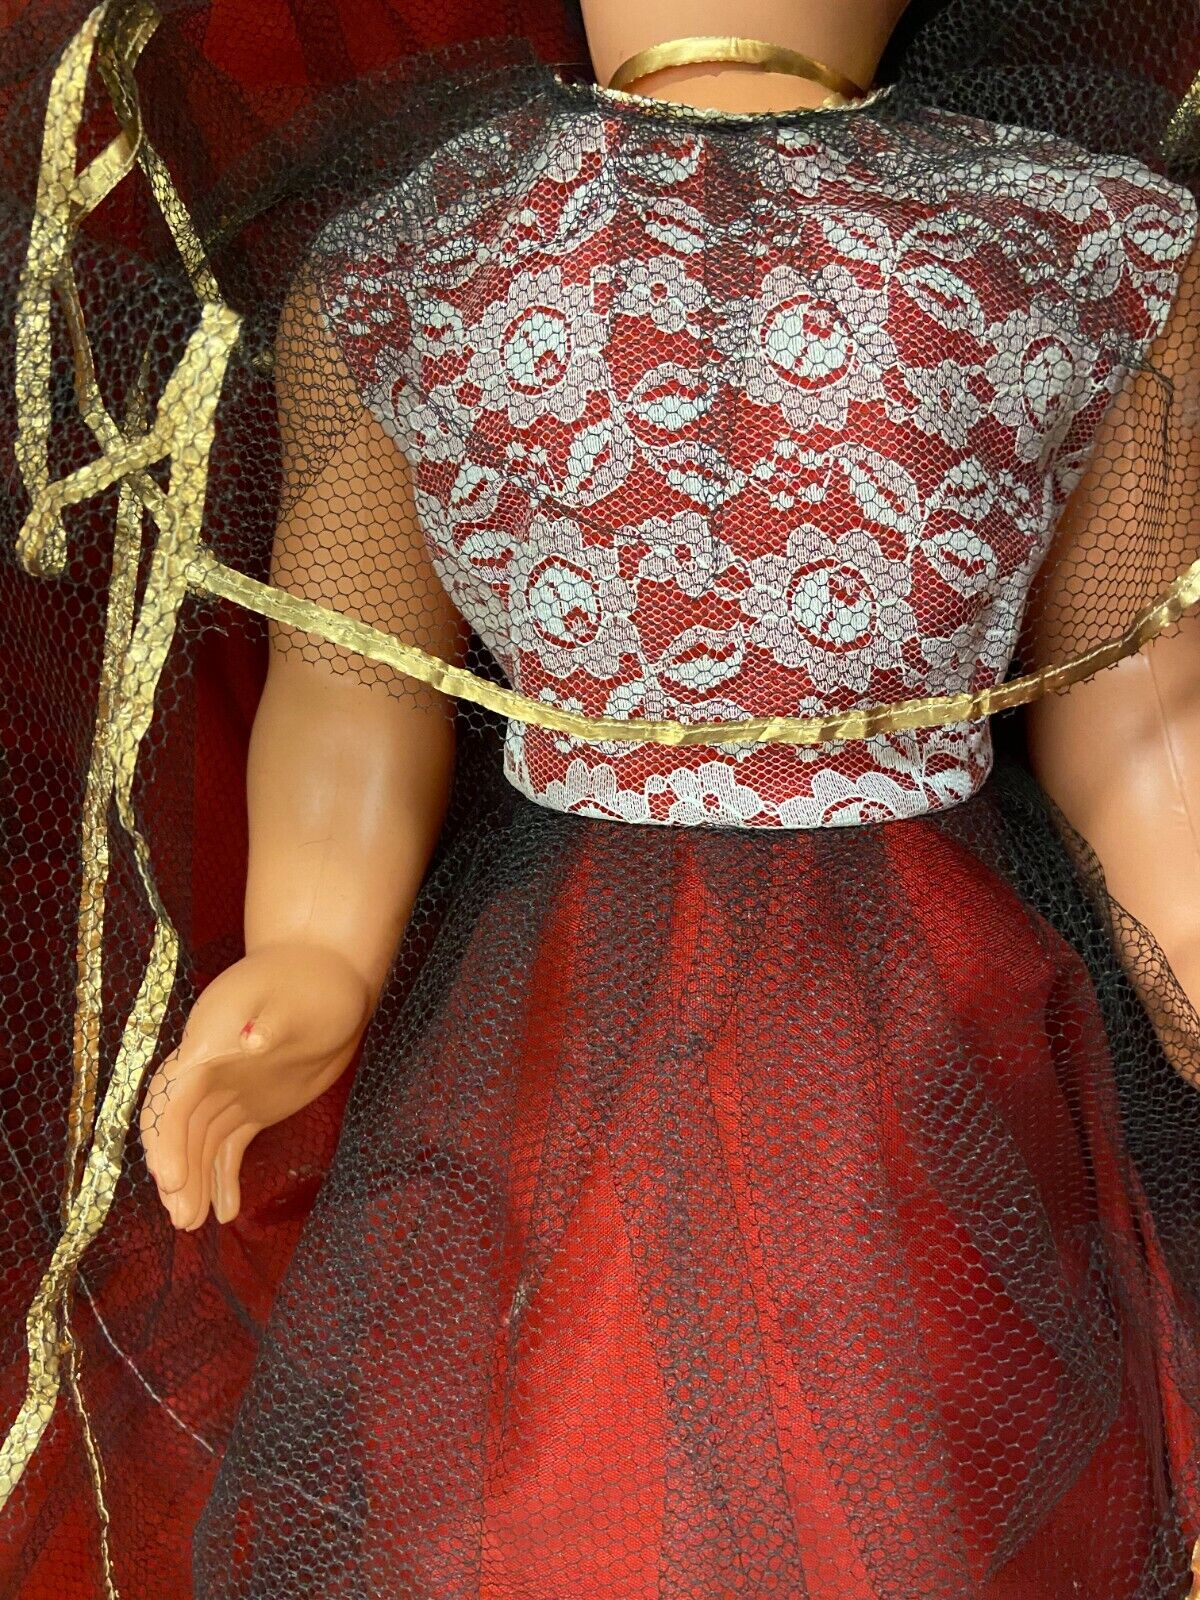 Antica bambola h 70 cm